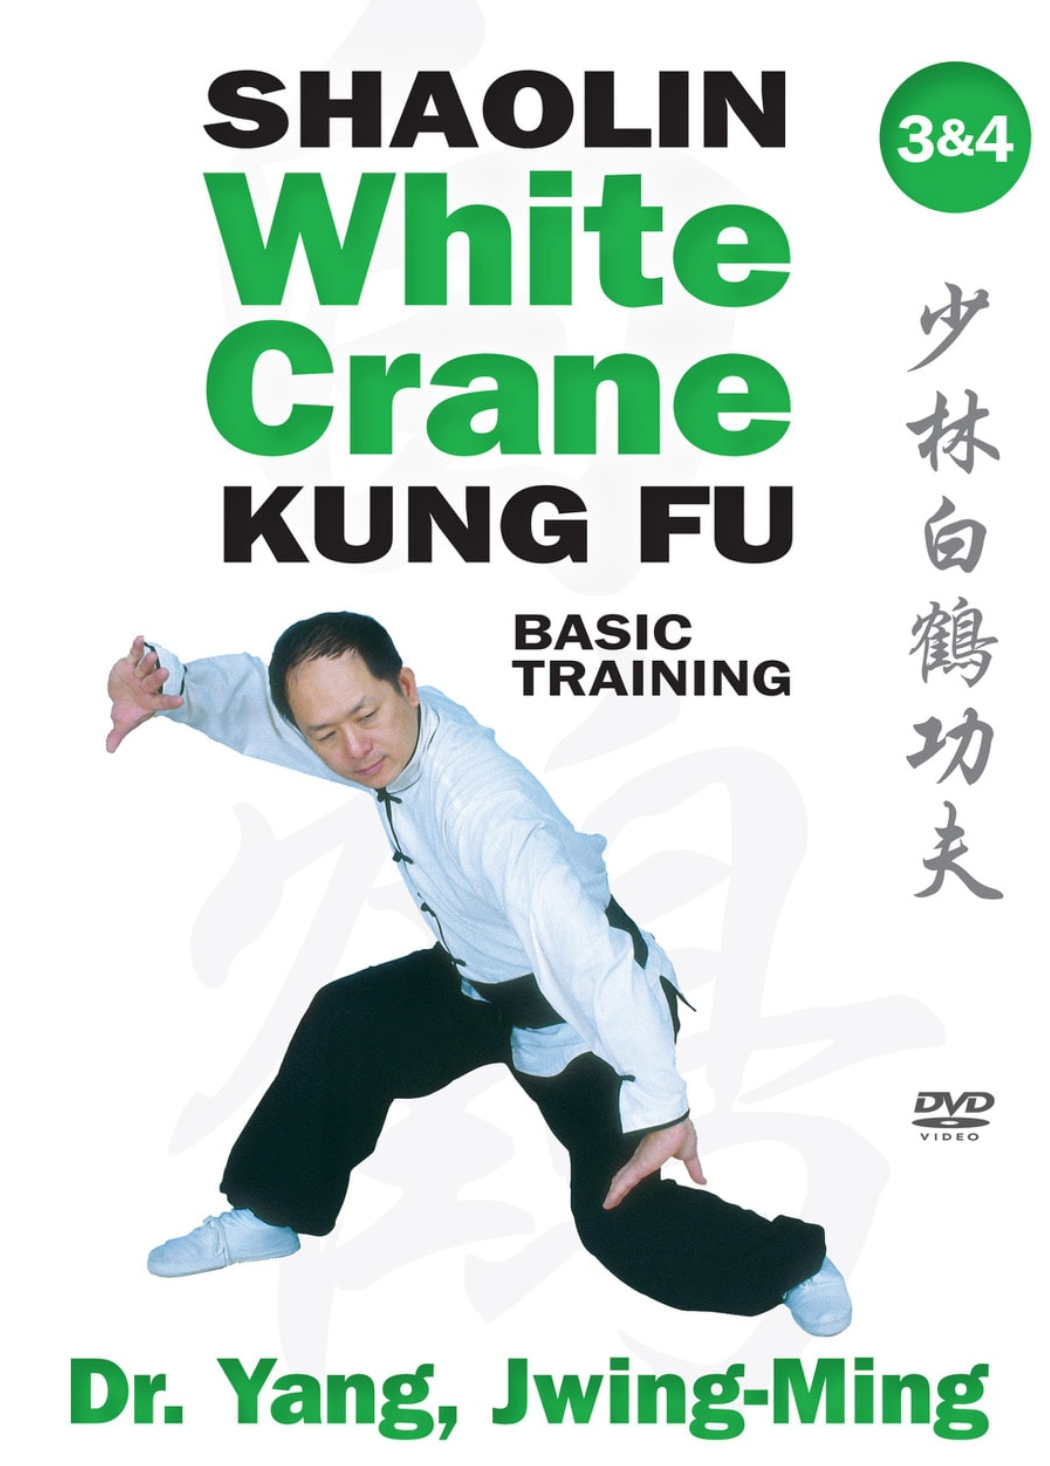 DVD de entrenamiento básico Shaolin White Crane Gong Fu Vol 3 y 4 con el Dr. Yang, Jwing Ming